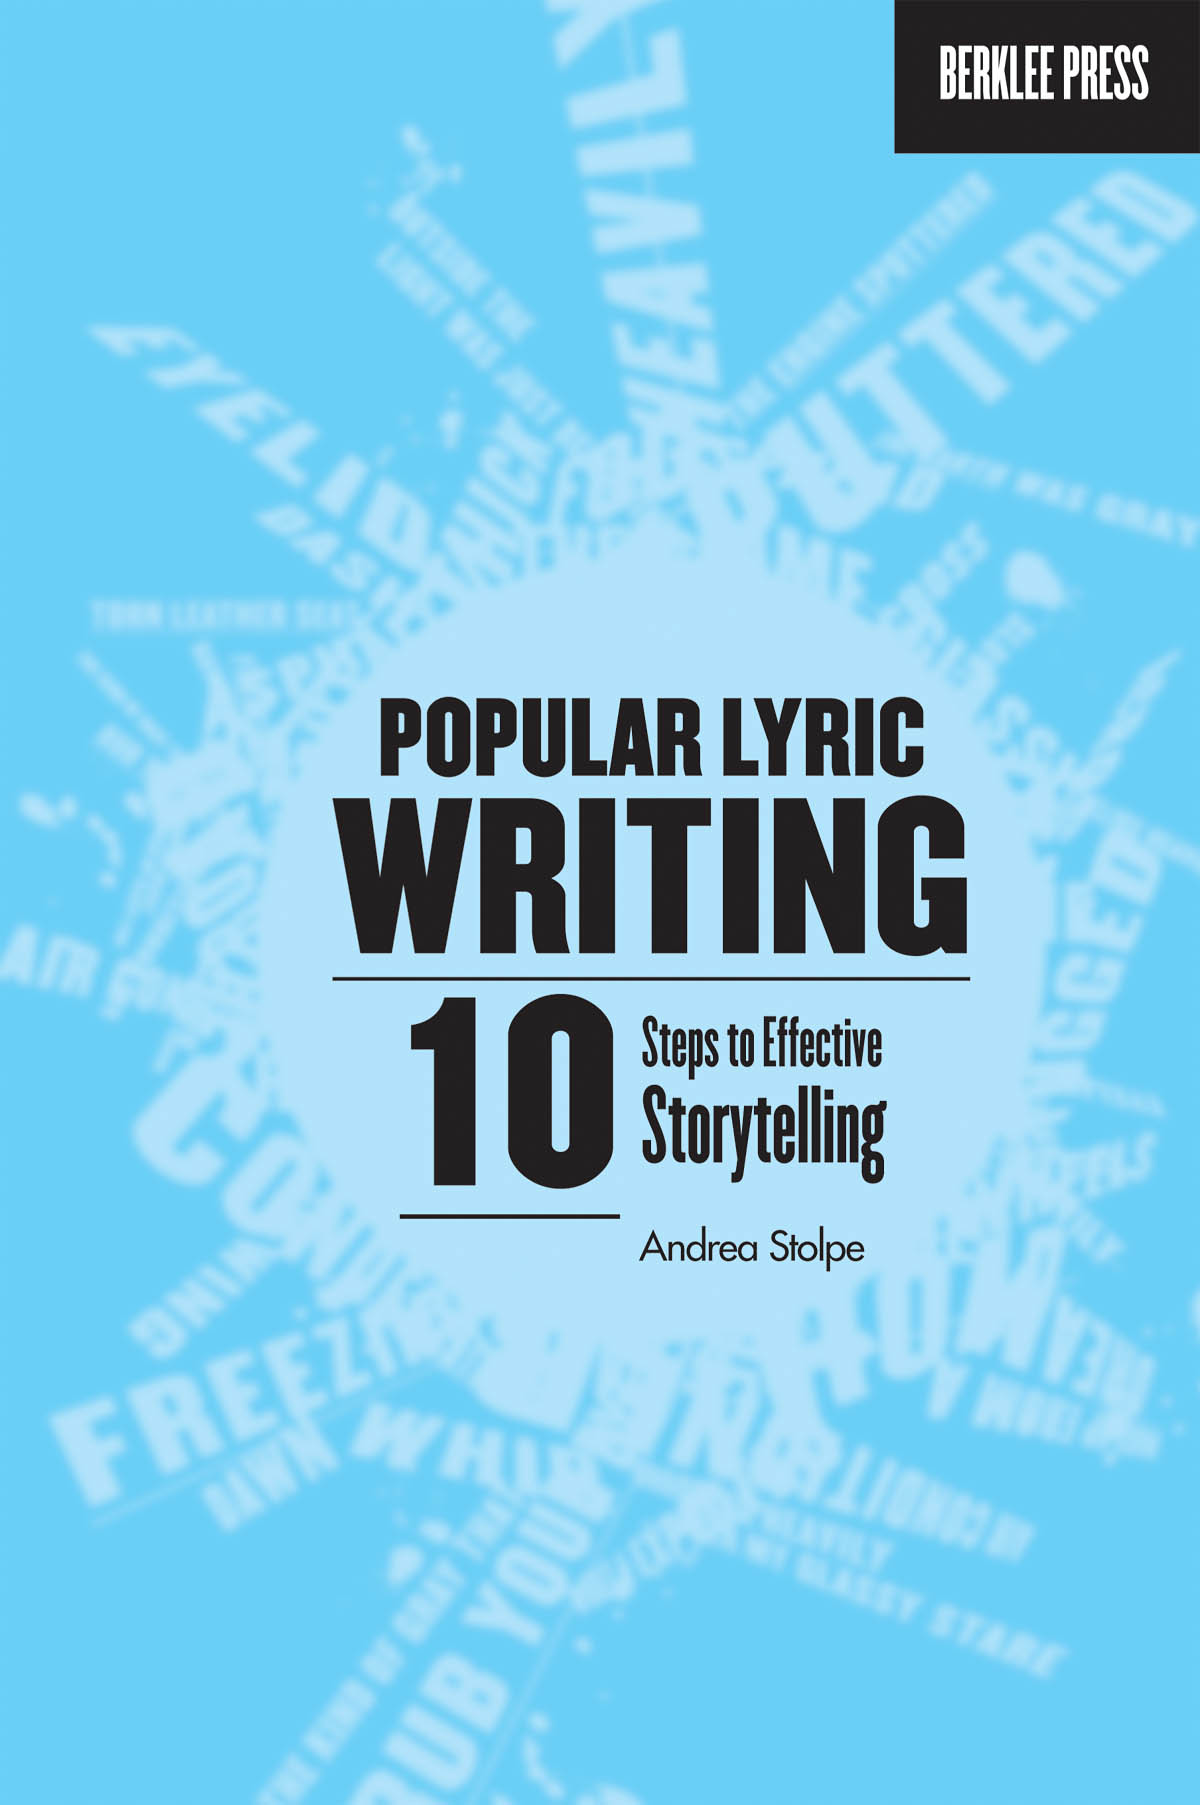 Popular Lyric Writing: Reference